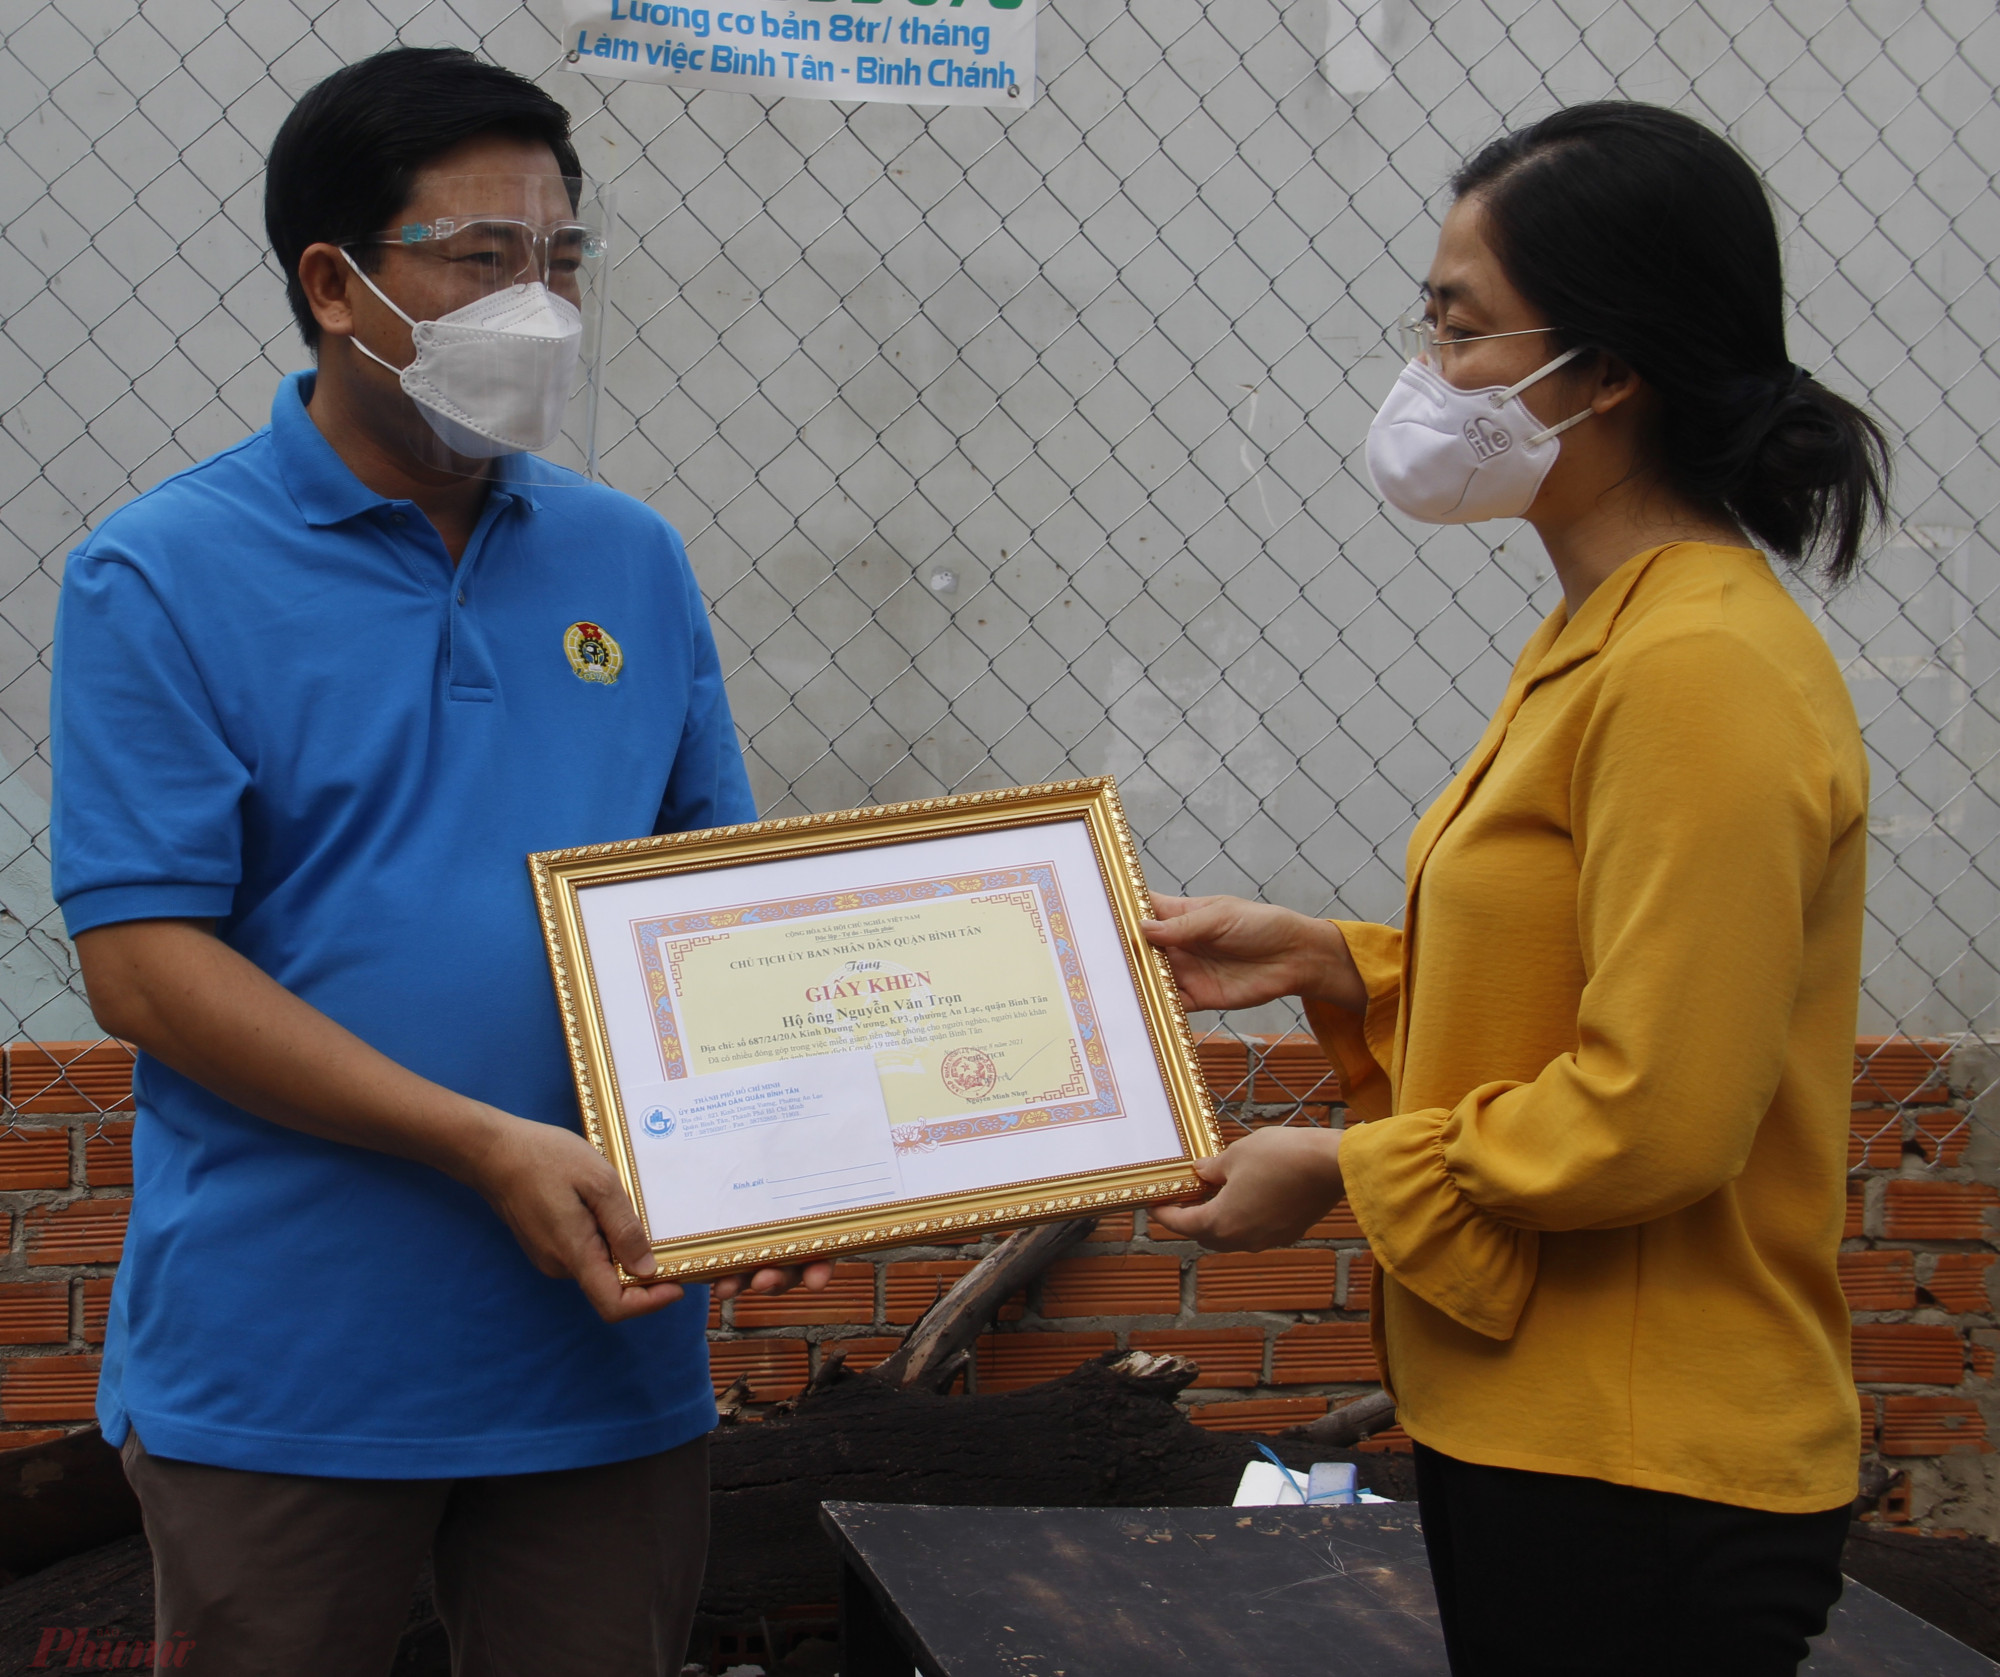 Bà Lê Thị Ngọc Dung tặng giấy khen của quận Bình Tân cho ông Nguyễn Văn Trọn.